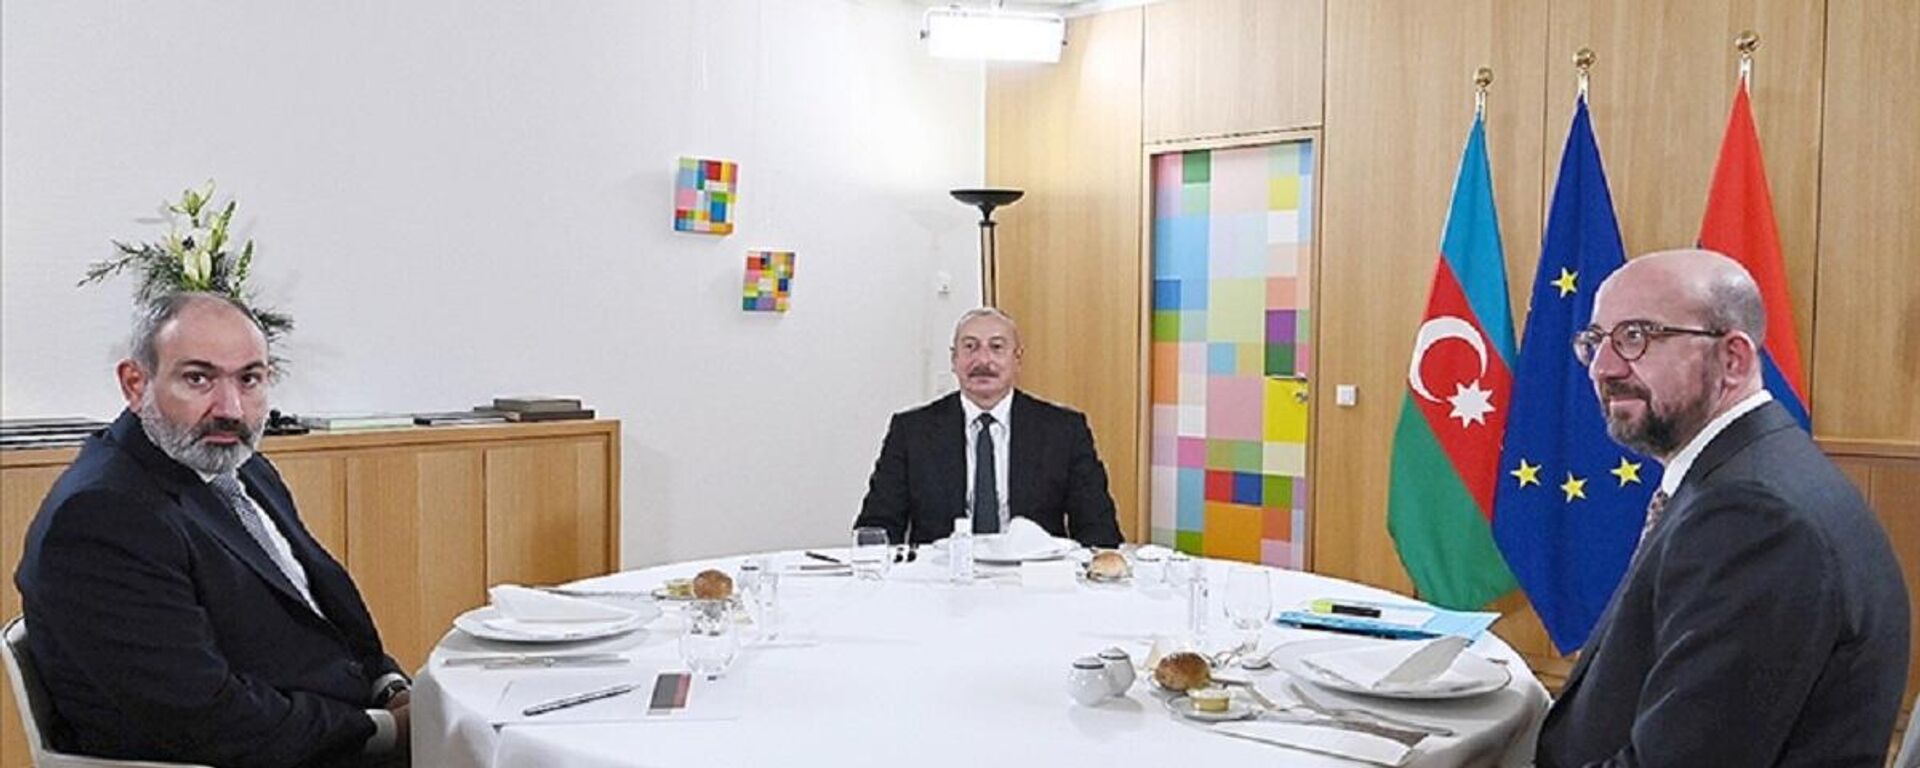 Azerbaycan Cumhurbaşkanı Aliyev ve Ermenistan Başbakanı Paşiyan, Avrupa Birliği Konseyi Başkanı Michel ile üçlü toplantı gerçekleştirdi. - Sputnik Türkiye, 1920, 14.12.2021